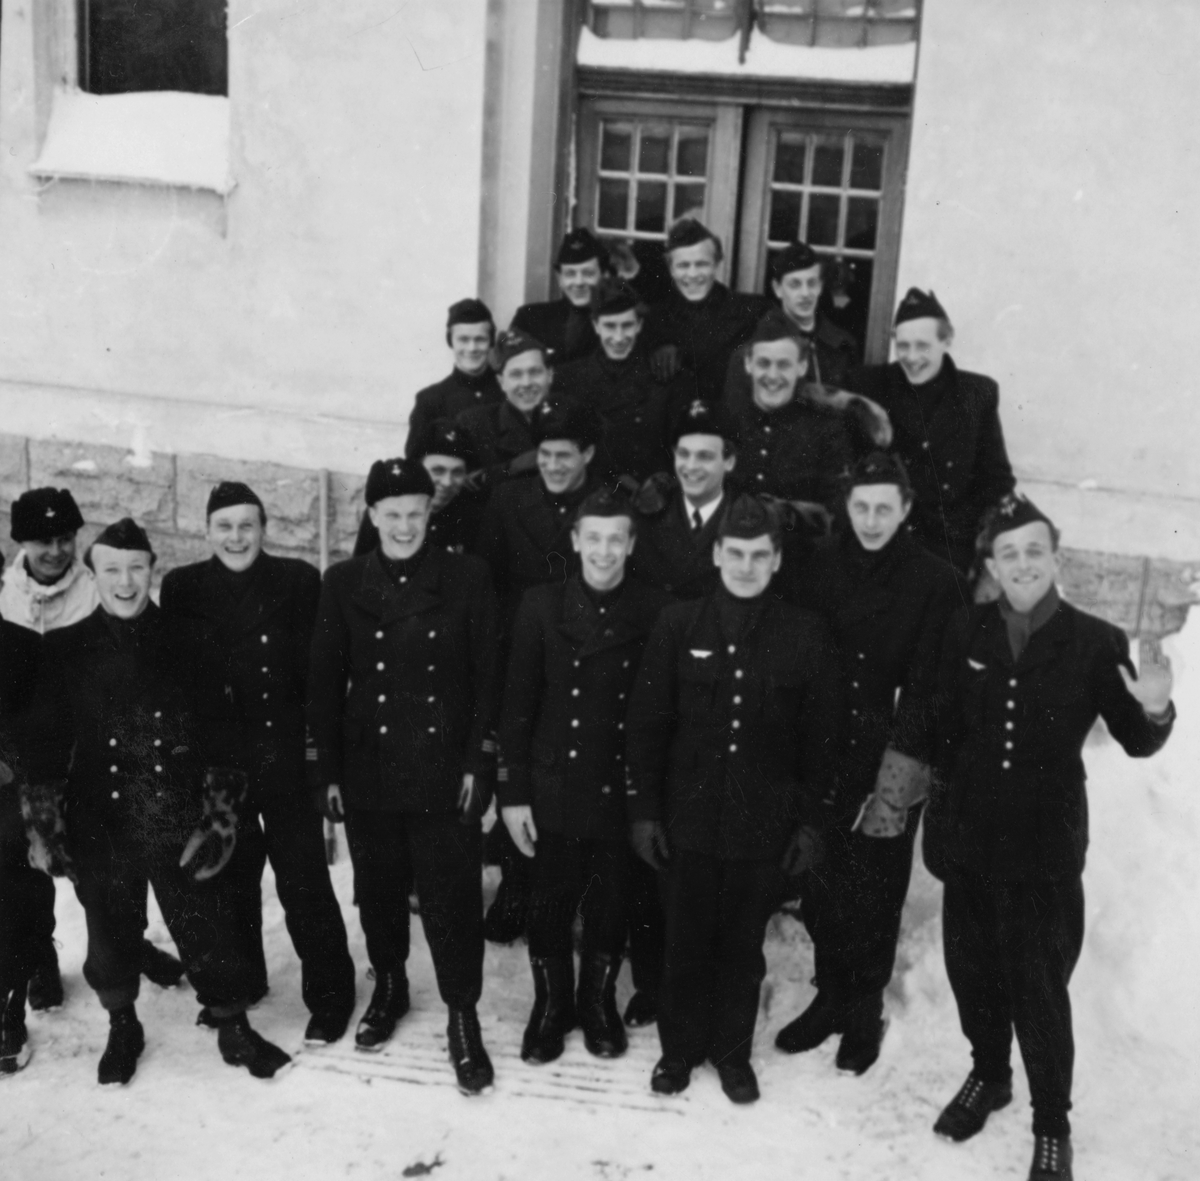 Gruppfoto av mekaniker och flygförare från F 14 före den planerade flygningen Halmstad-Kiruna i februari 1946. 19 män samlade framför hus. Flygningen slutade i nödlandning i Härnösandstrakten den 10 februari 1946.